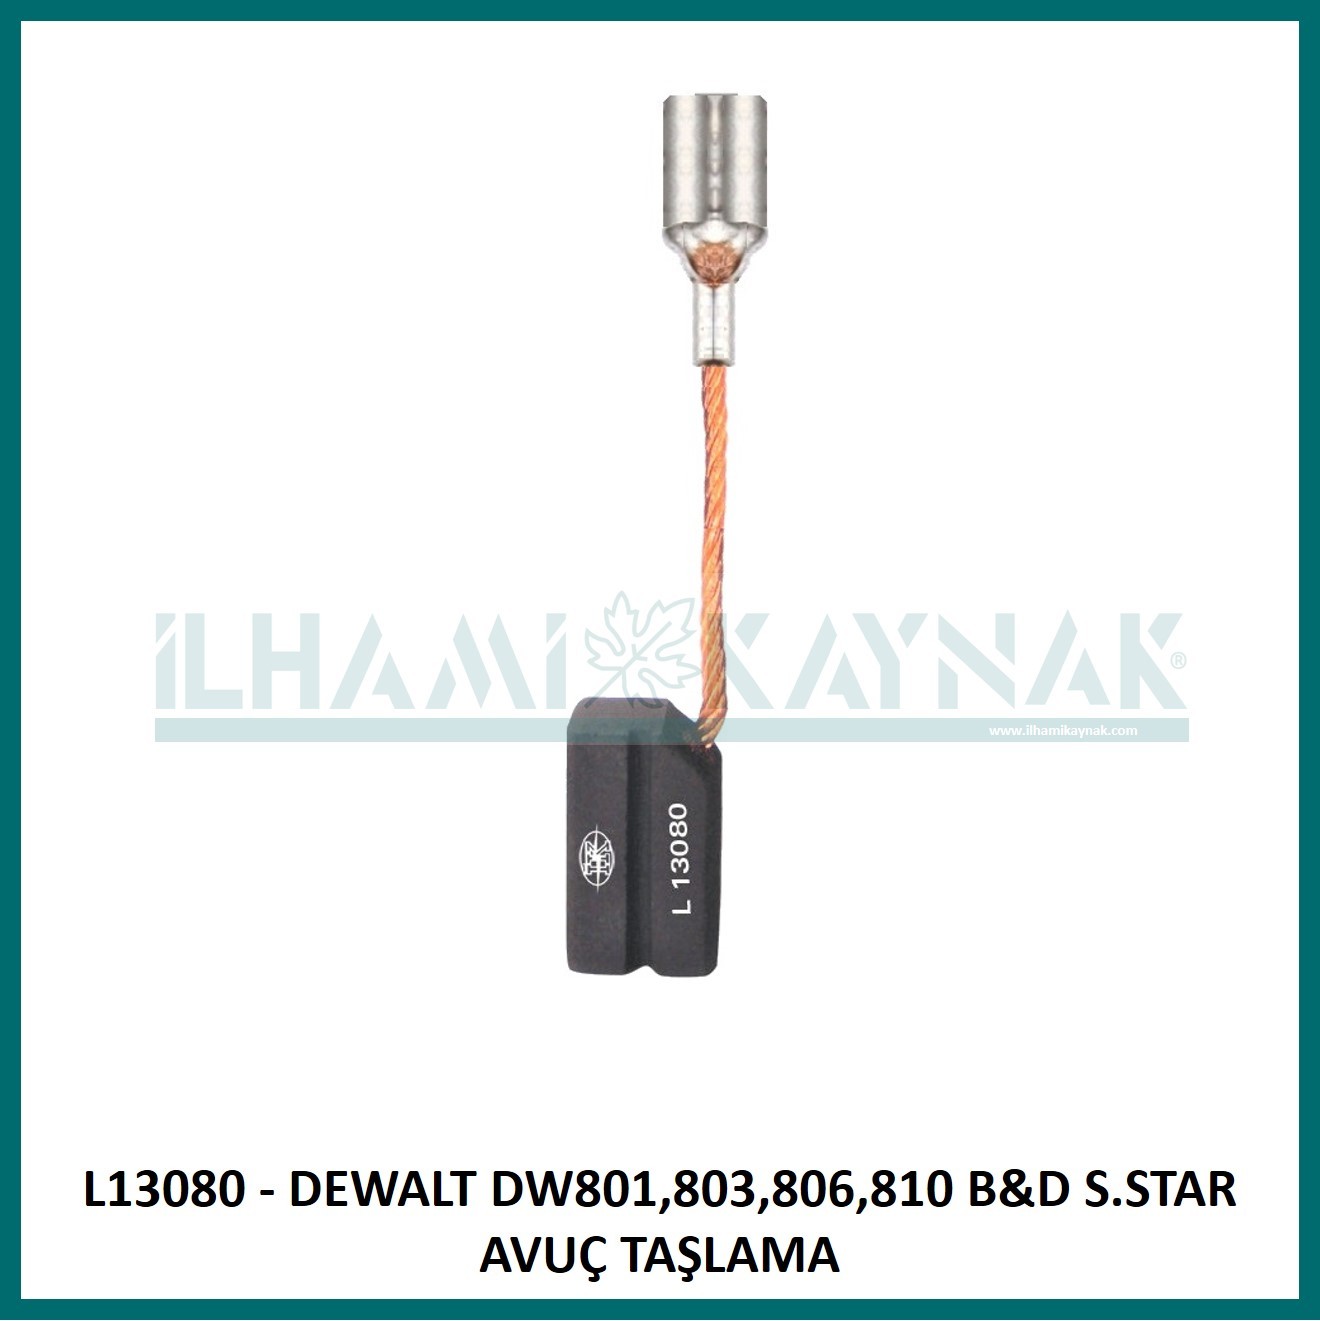 L13080 - DEWALT DW801,803,806,810 B&D S.STAR AVUÇ TAŞLAMA - 6.3*8*13.5 mm - 100 Adet